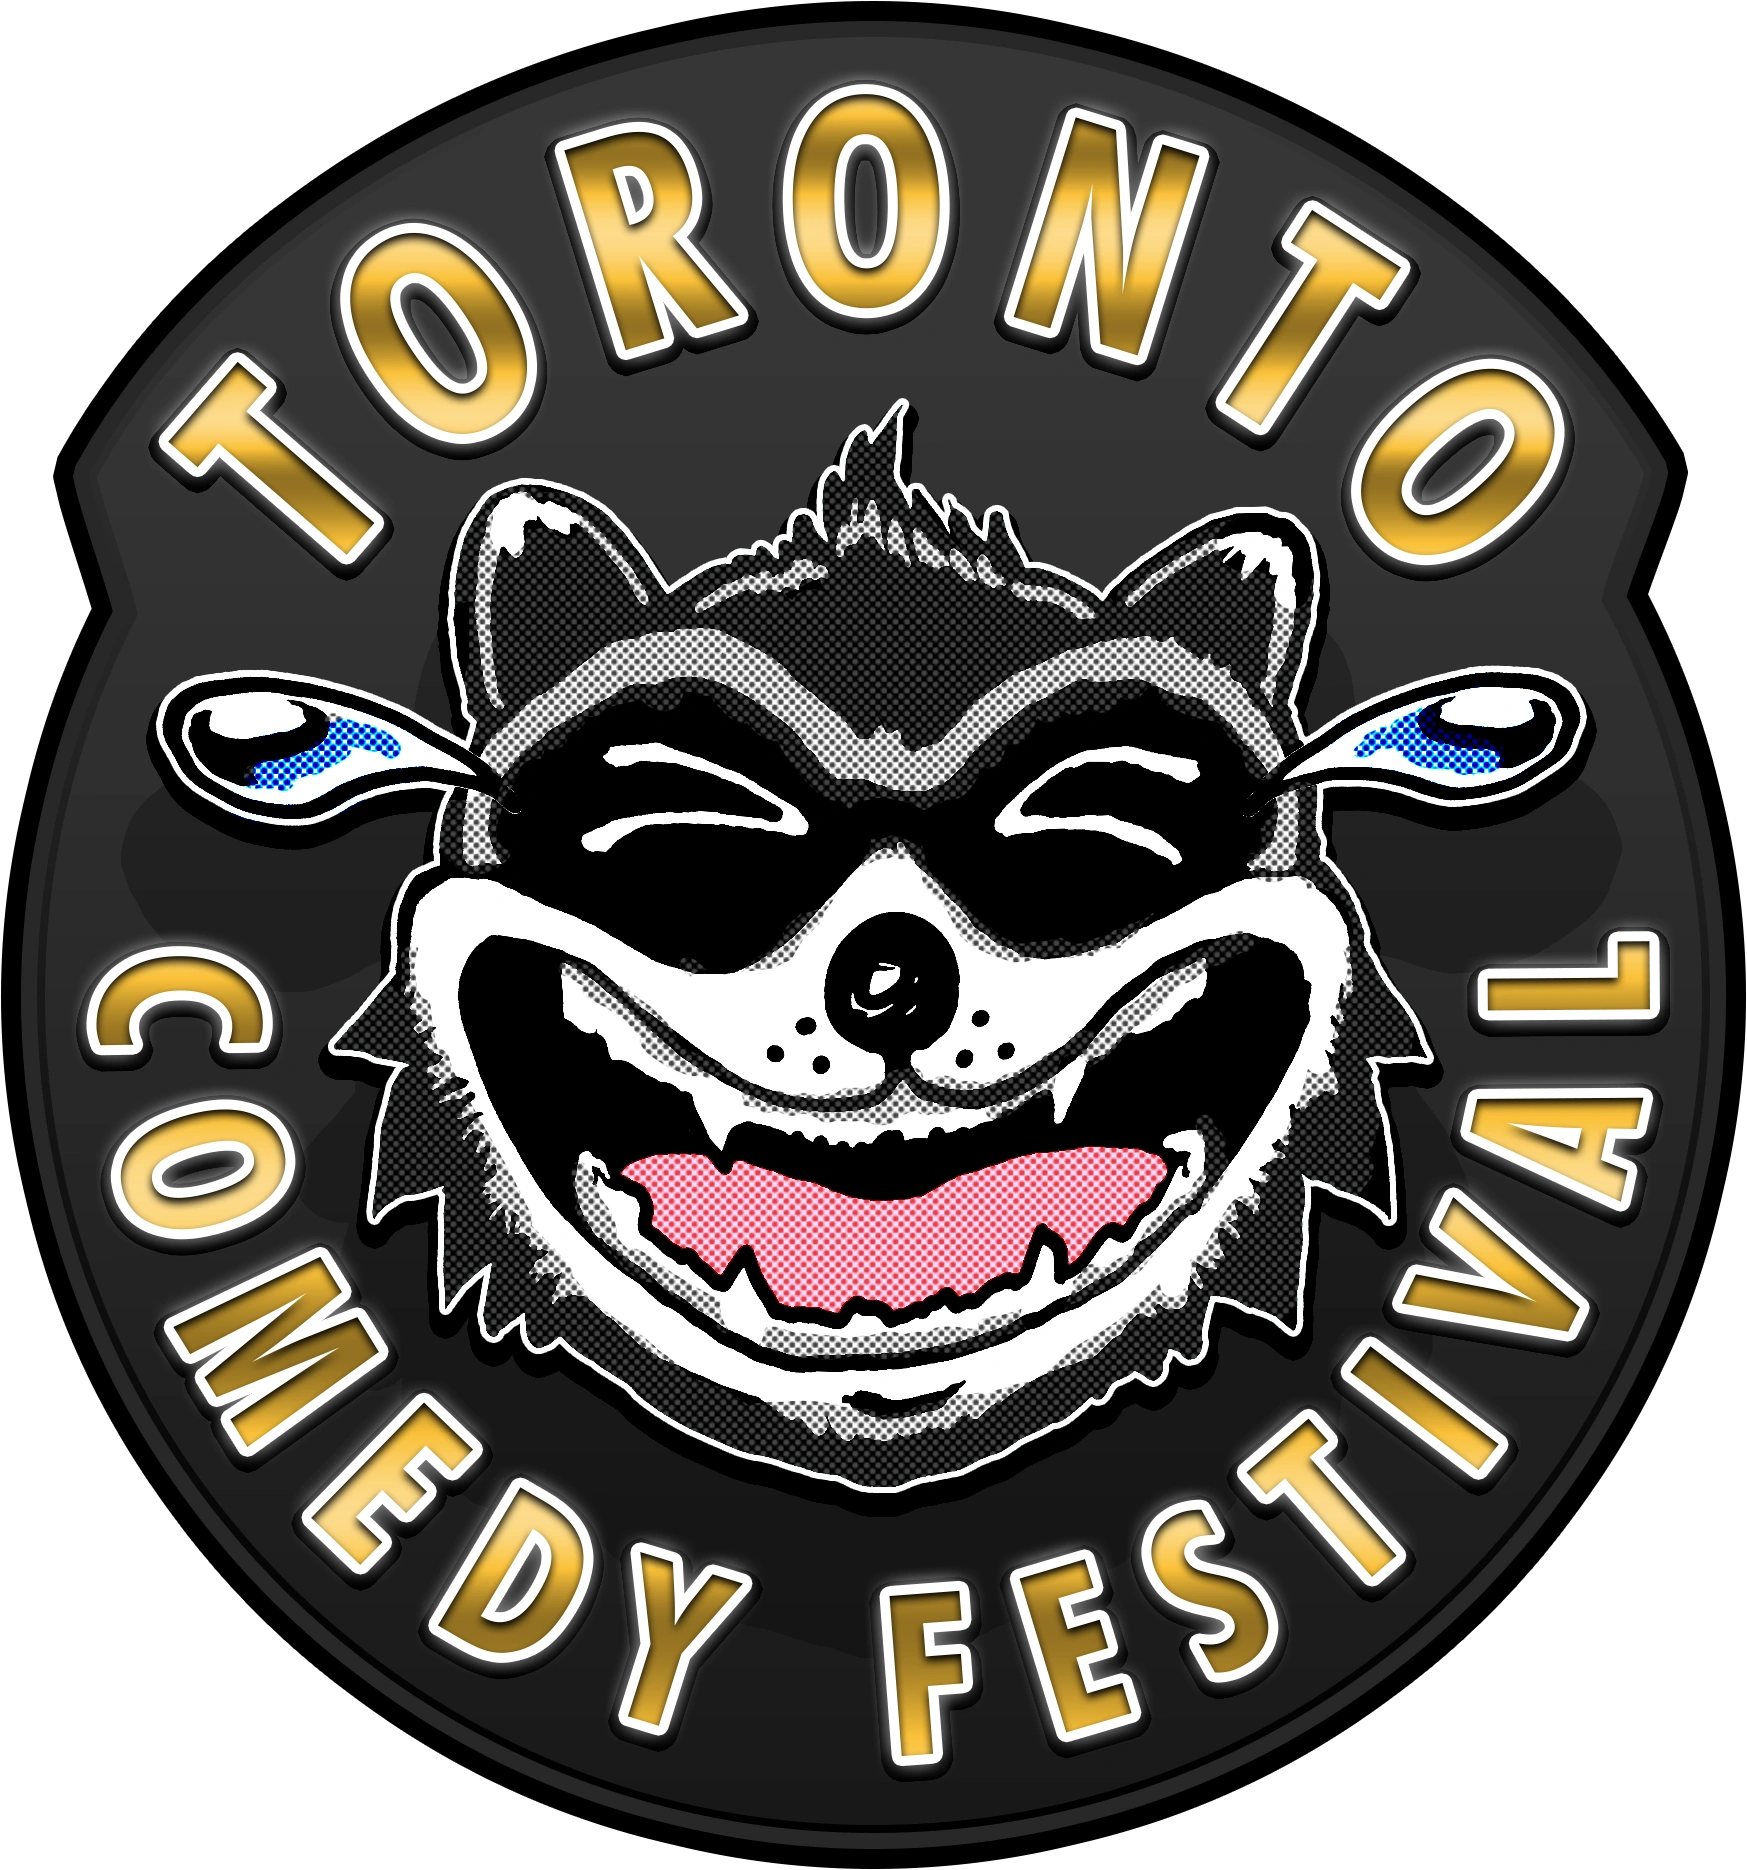 Toronto Comedy Festival